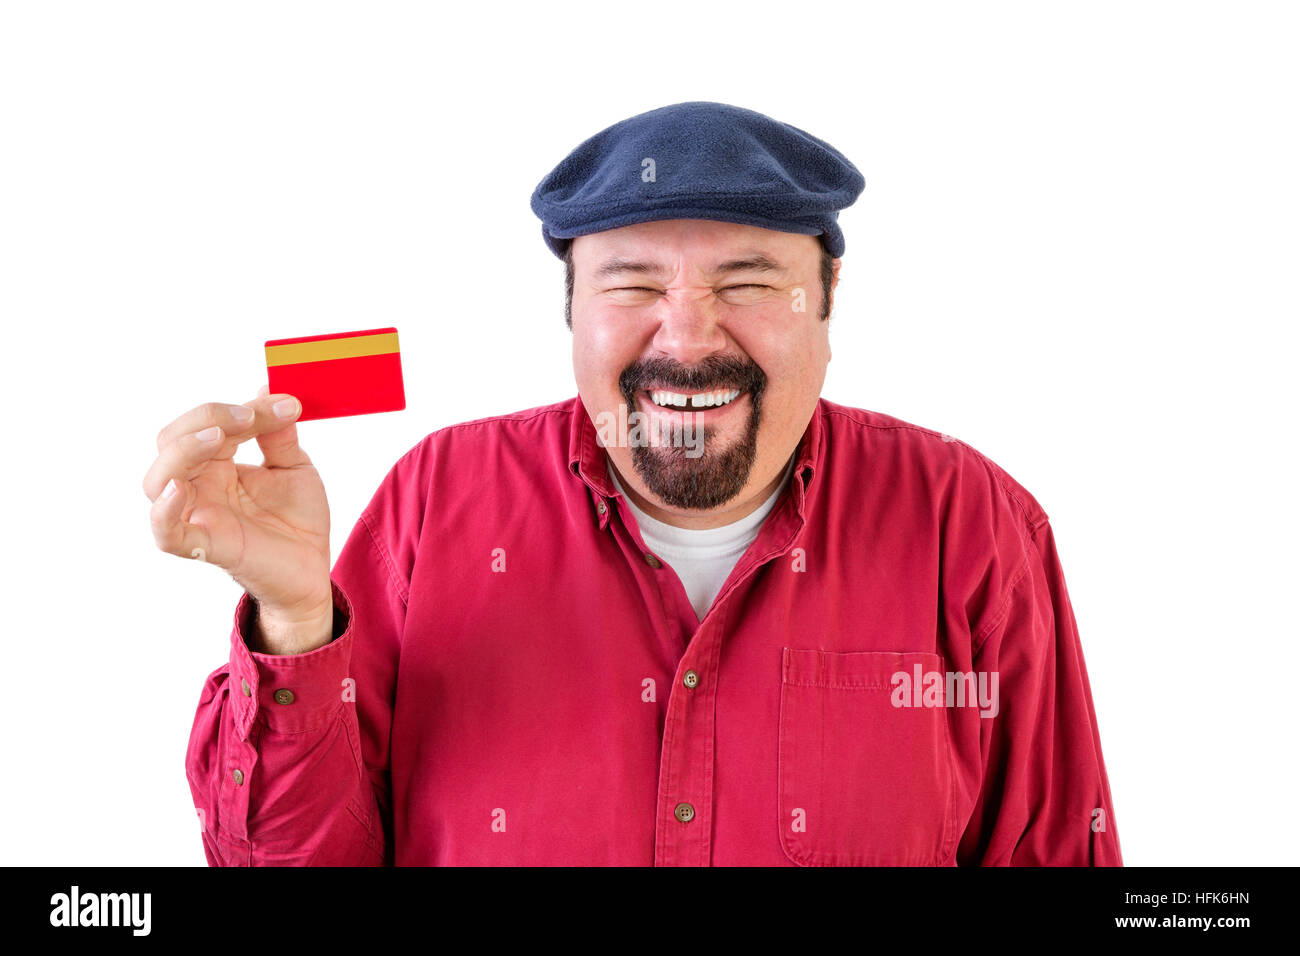 Fröhlichen Mann mittleren Alters mit einem Spitzbart trägt ein rotes Hemd und Kappe hält eine Bankkarte mit einem strahlenden Lächeln und lachen, als er die Elemente h stellt sich vor Stockfoto